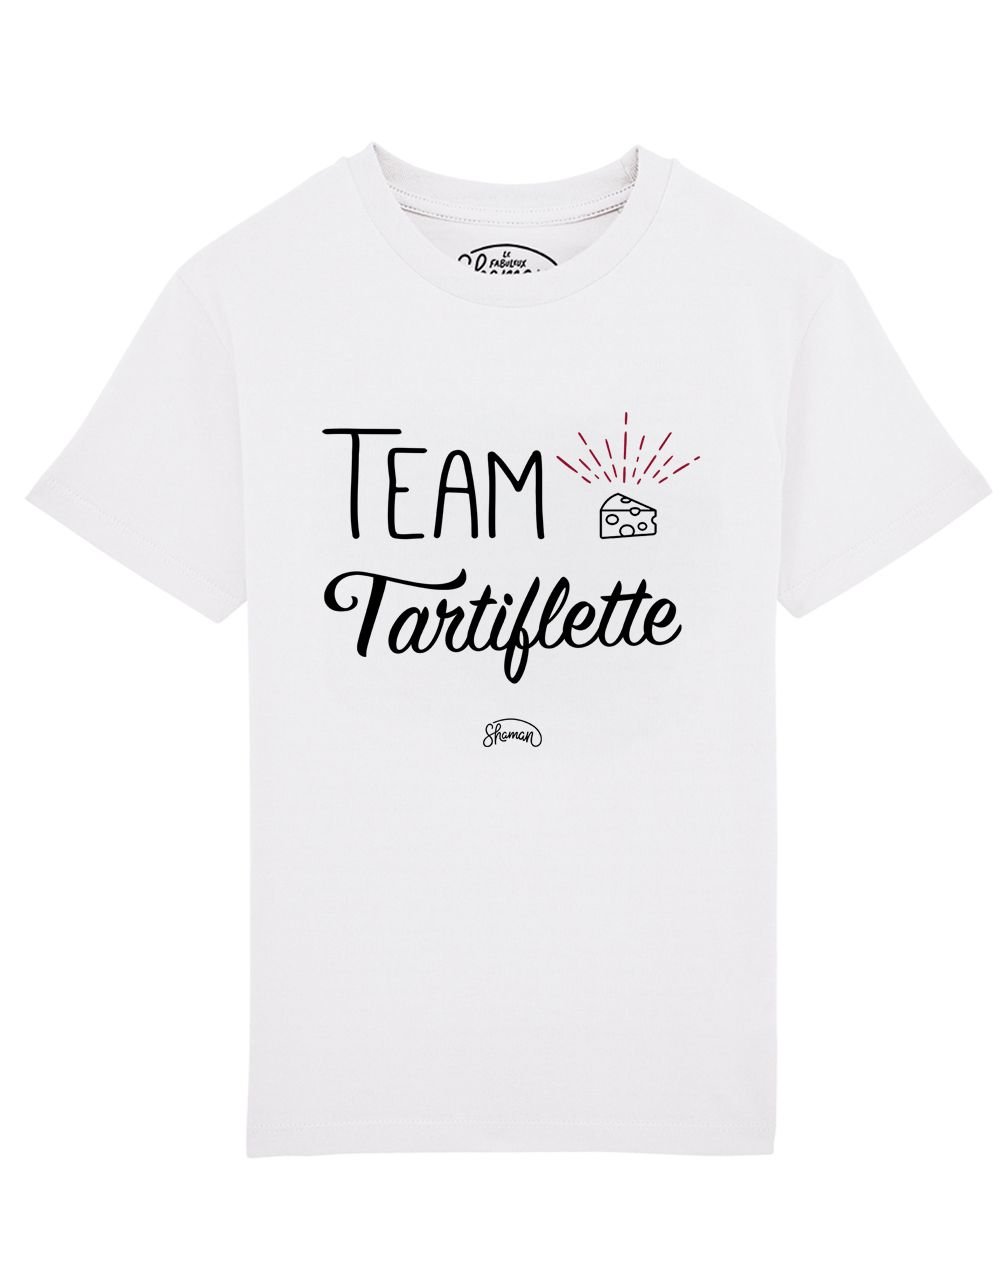 Tee shirt Team tartiflette